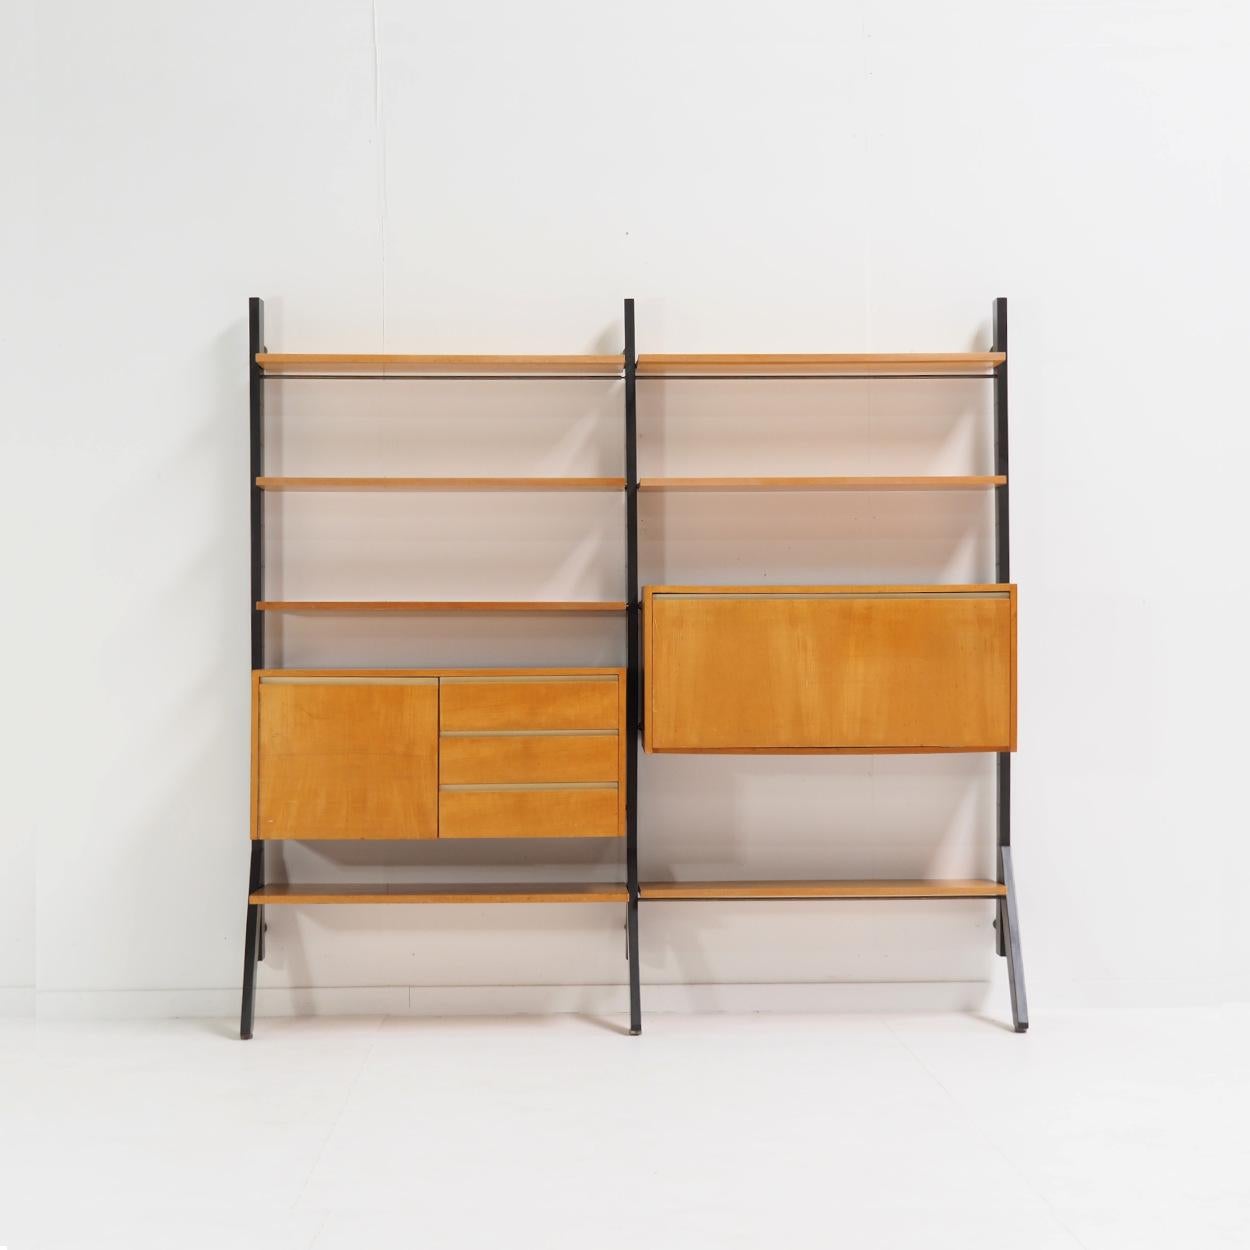 Hängeschrank 'Module', entworfen 1956 von Kho Liang Ie für das niederländische Möbelunternehmen Fristho.

Die Schrankwand ist aus Buche und dunkelgrau lackiertem Holz gefertigt und besteht aus Regalen, einem Ablagefach und einem Sekretärelement. In